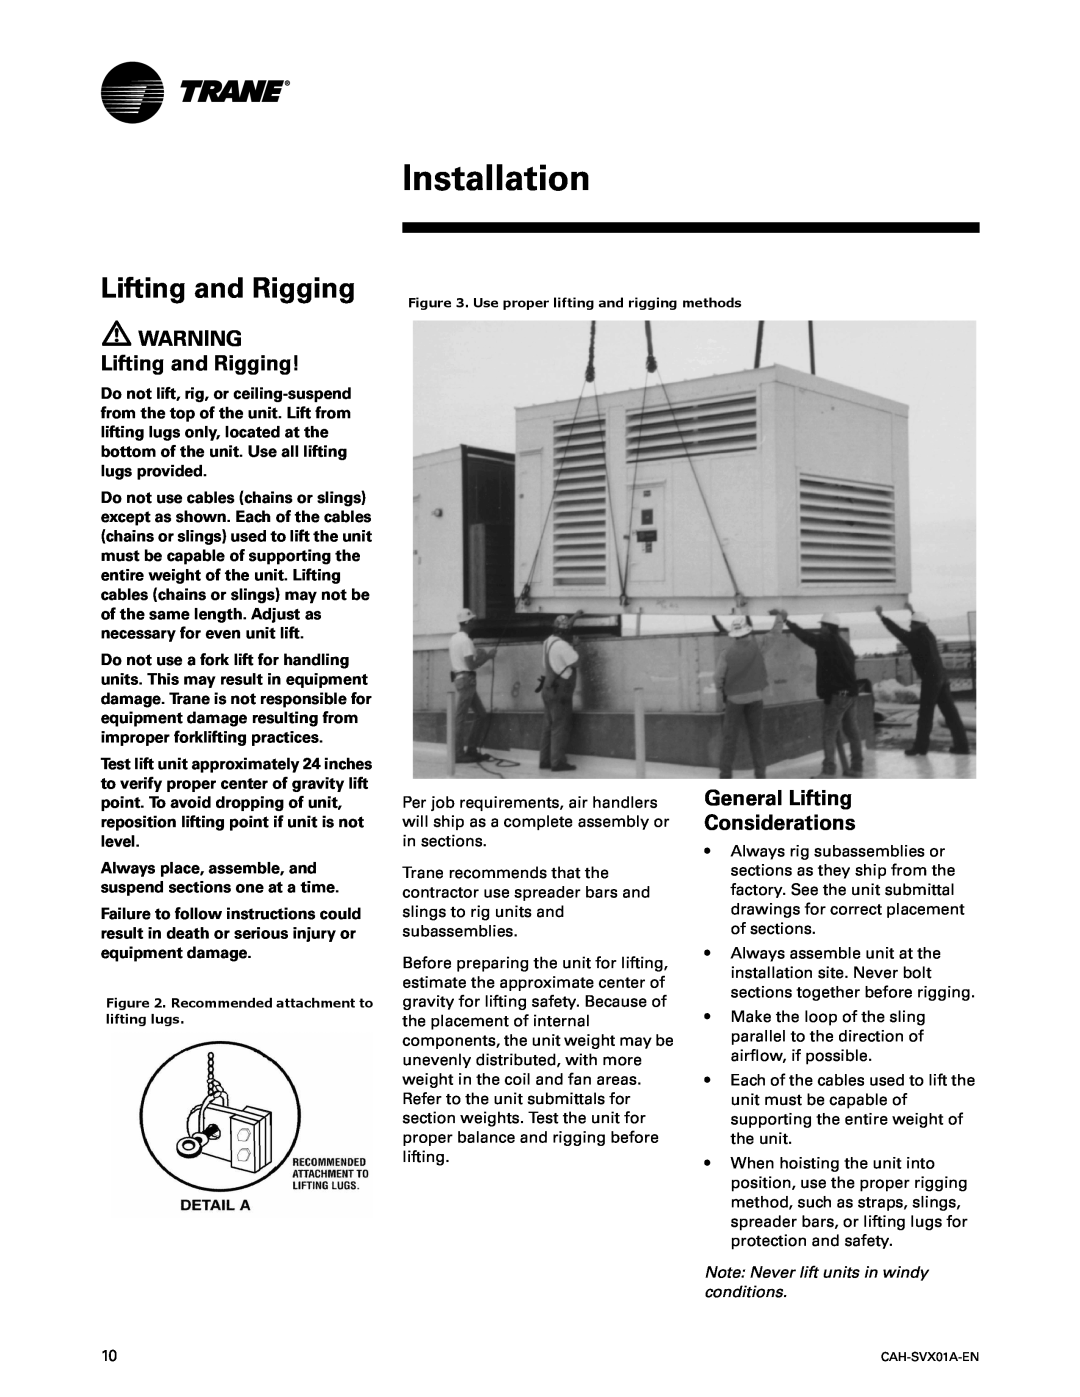 Trane CAH-SVX01A-EN manual Installation, WARNING Lifting and Rigging, General Lifting Considerations 